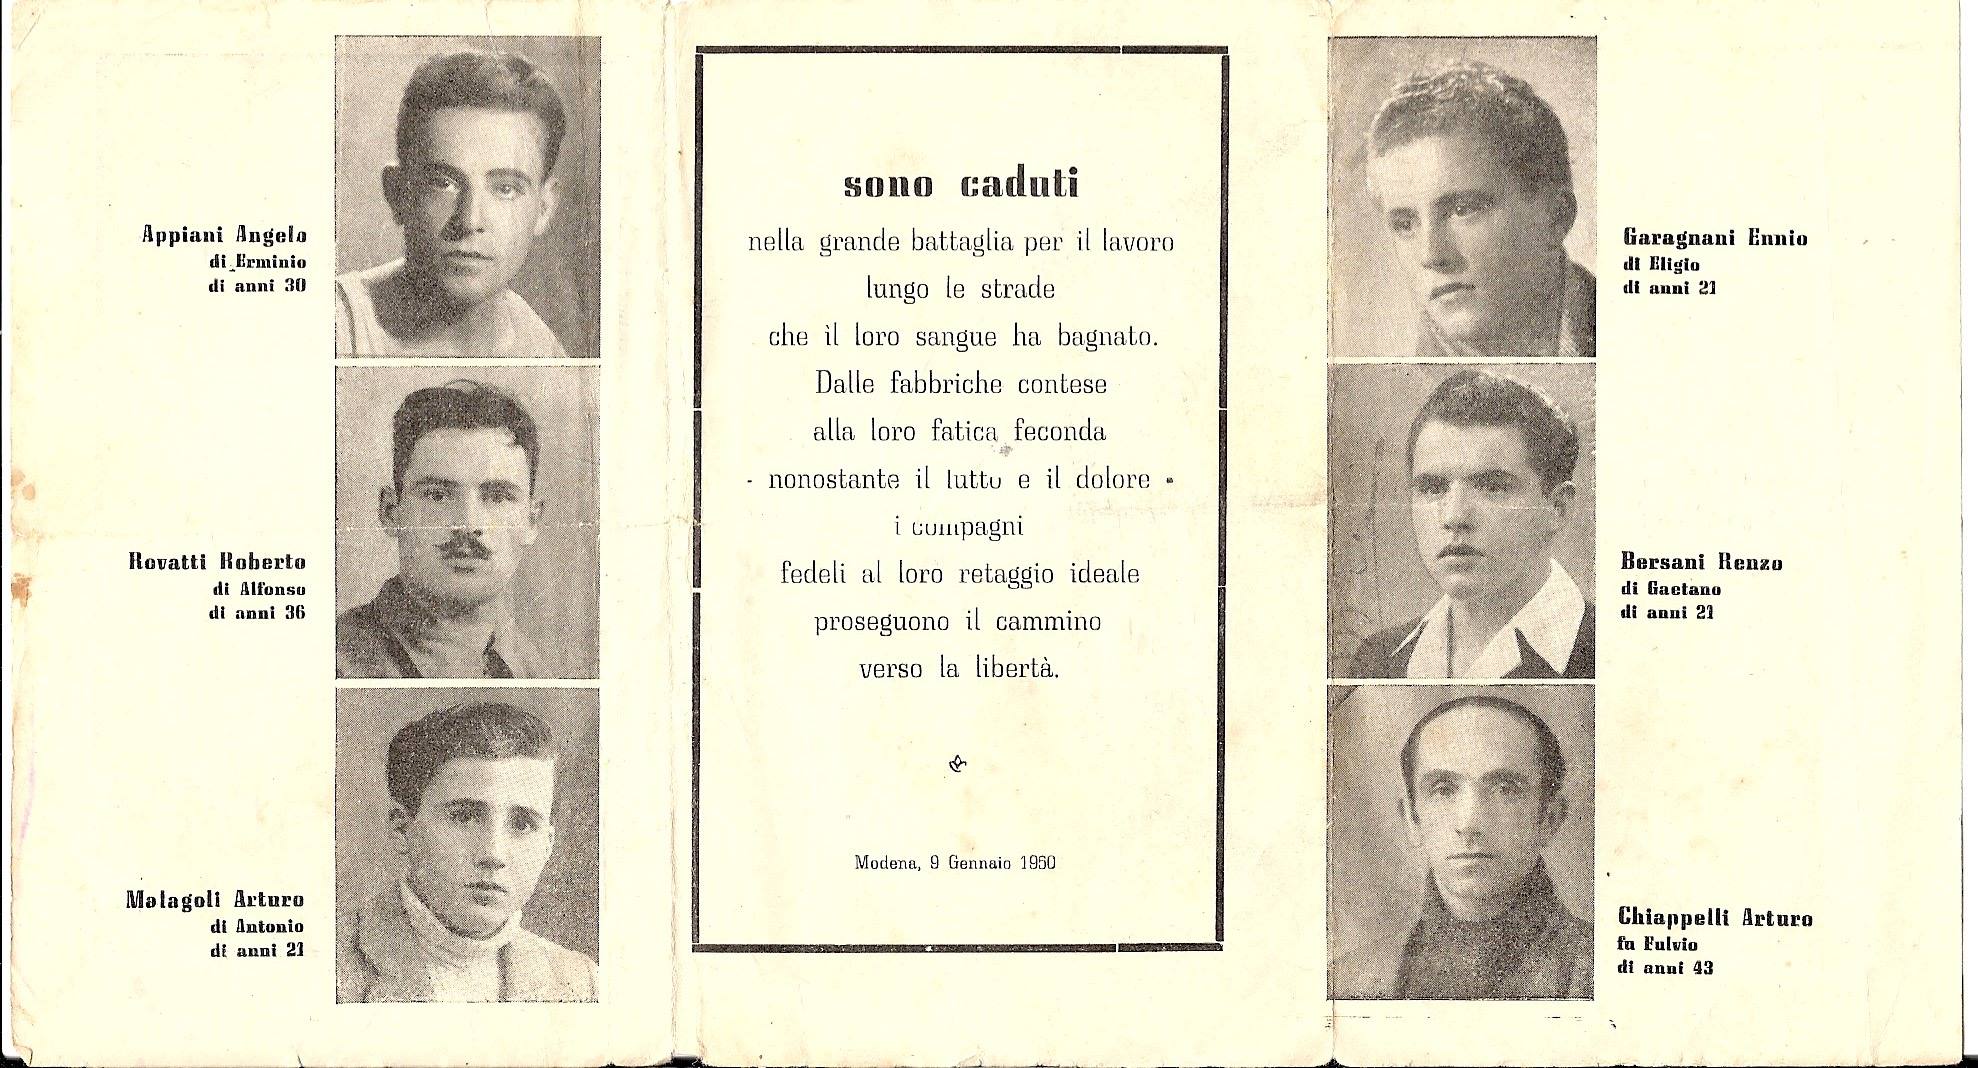 Ricordo dei sei manifestanti uccisi il 9 gennaio 1950 a Modena, nella zona delle Fonderie Riunite. Foto via Wikimedia Commons